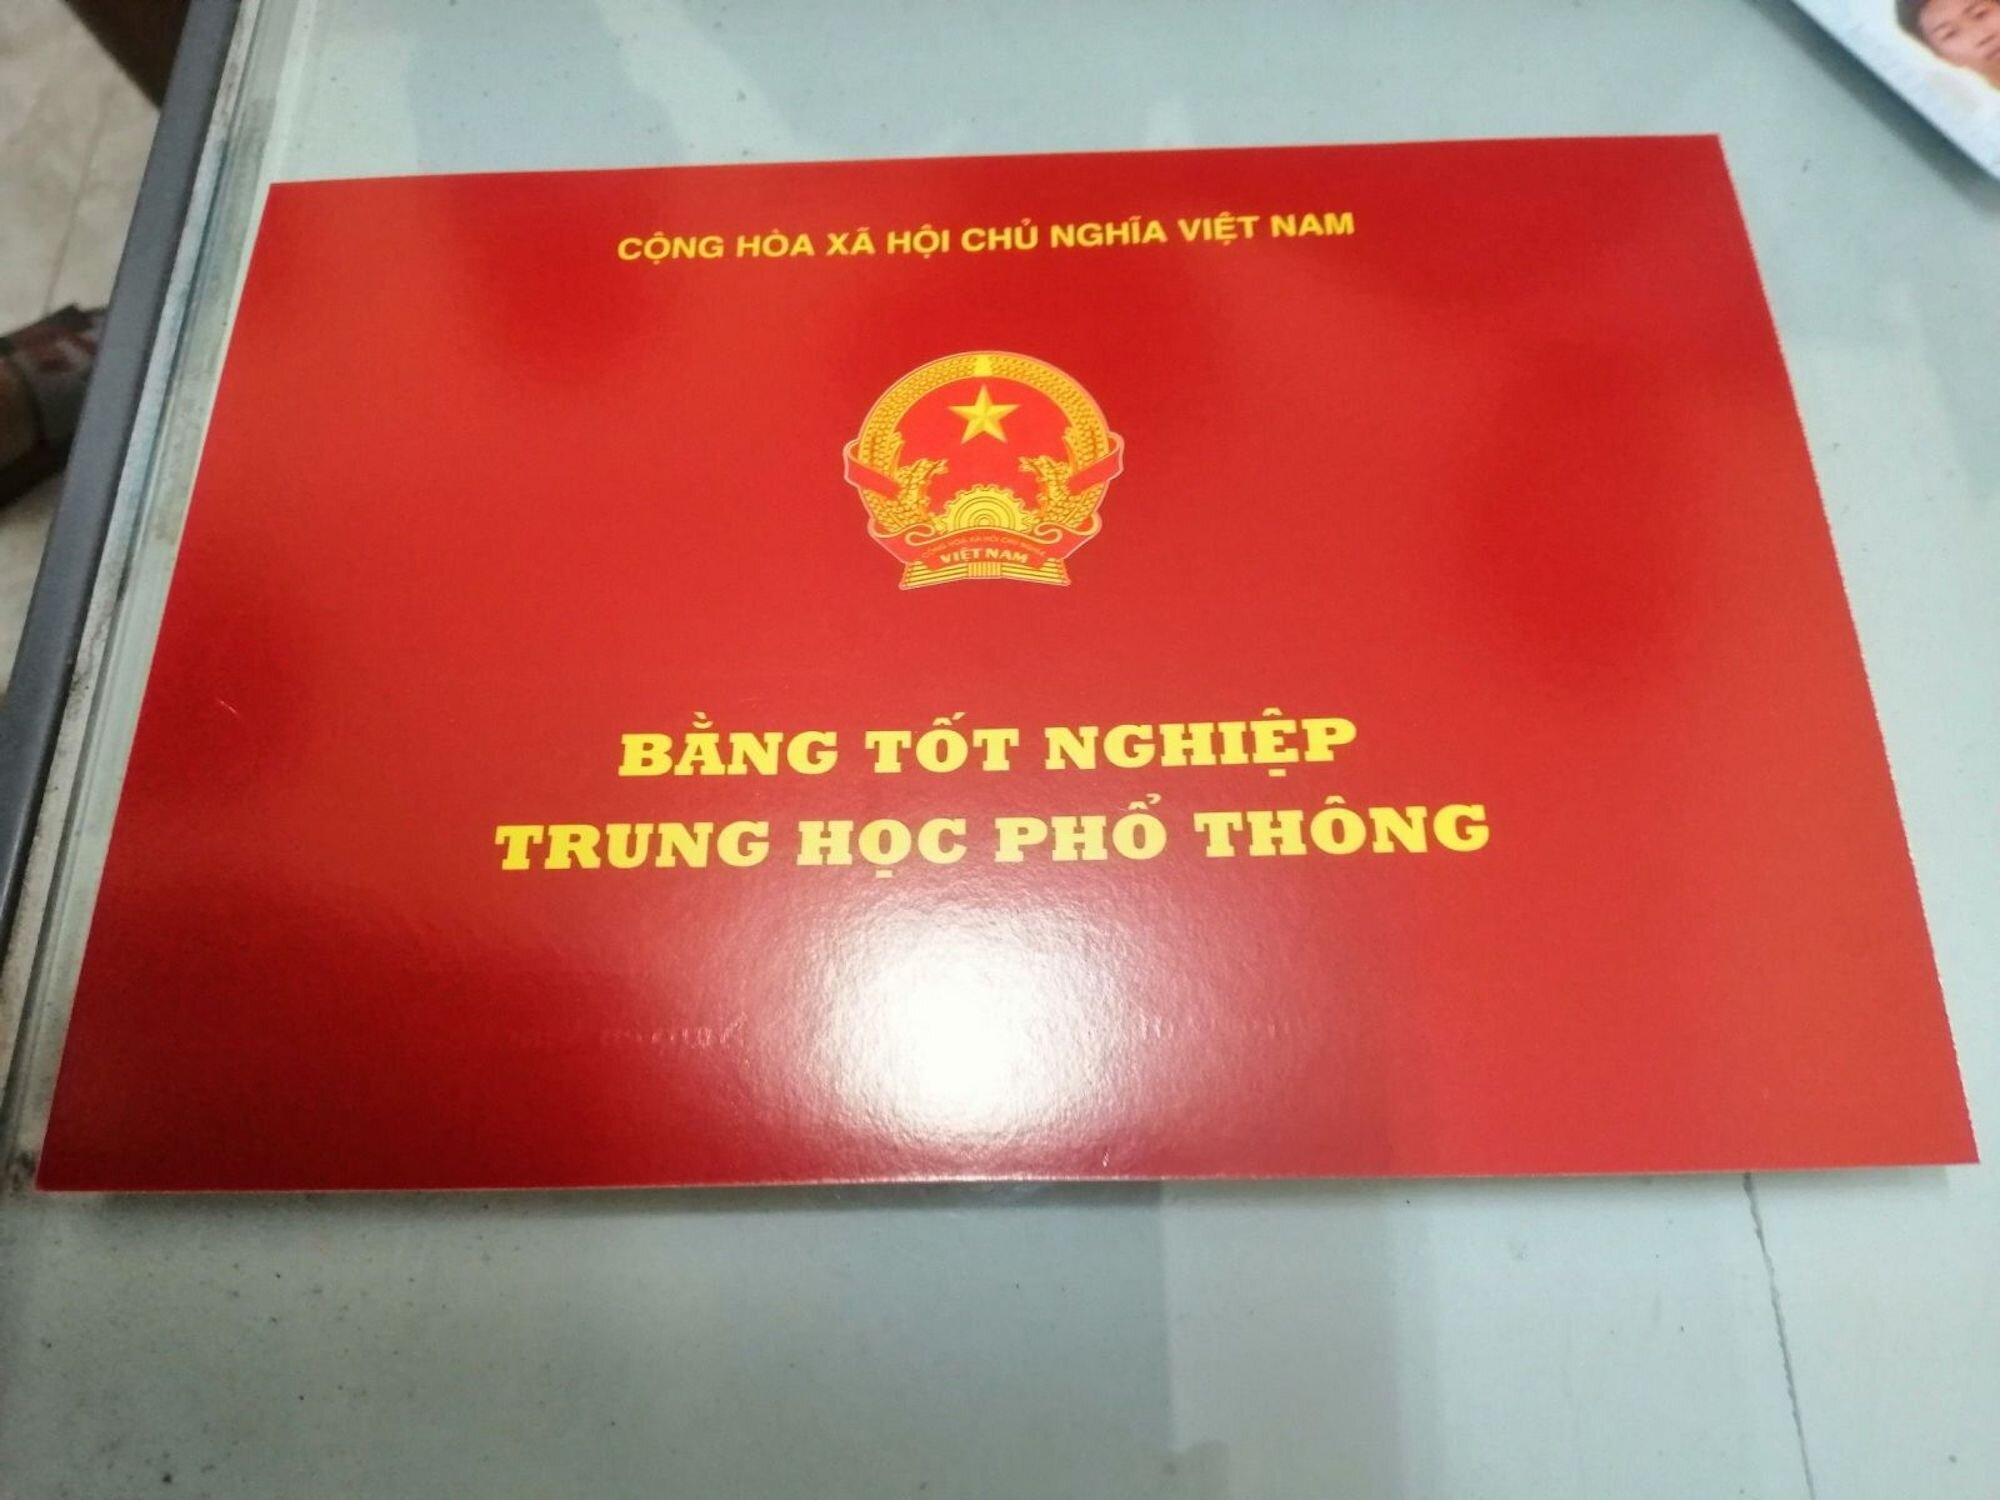 Một hiệu trưởng ở Hà Nội bị thu hồi bằng tốt nghiệp THPT vì gian lận - 1